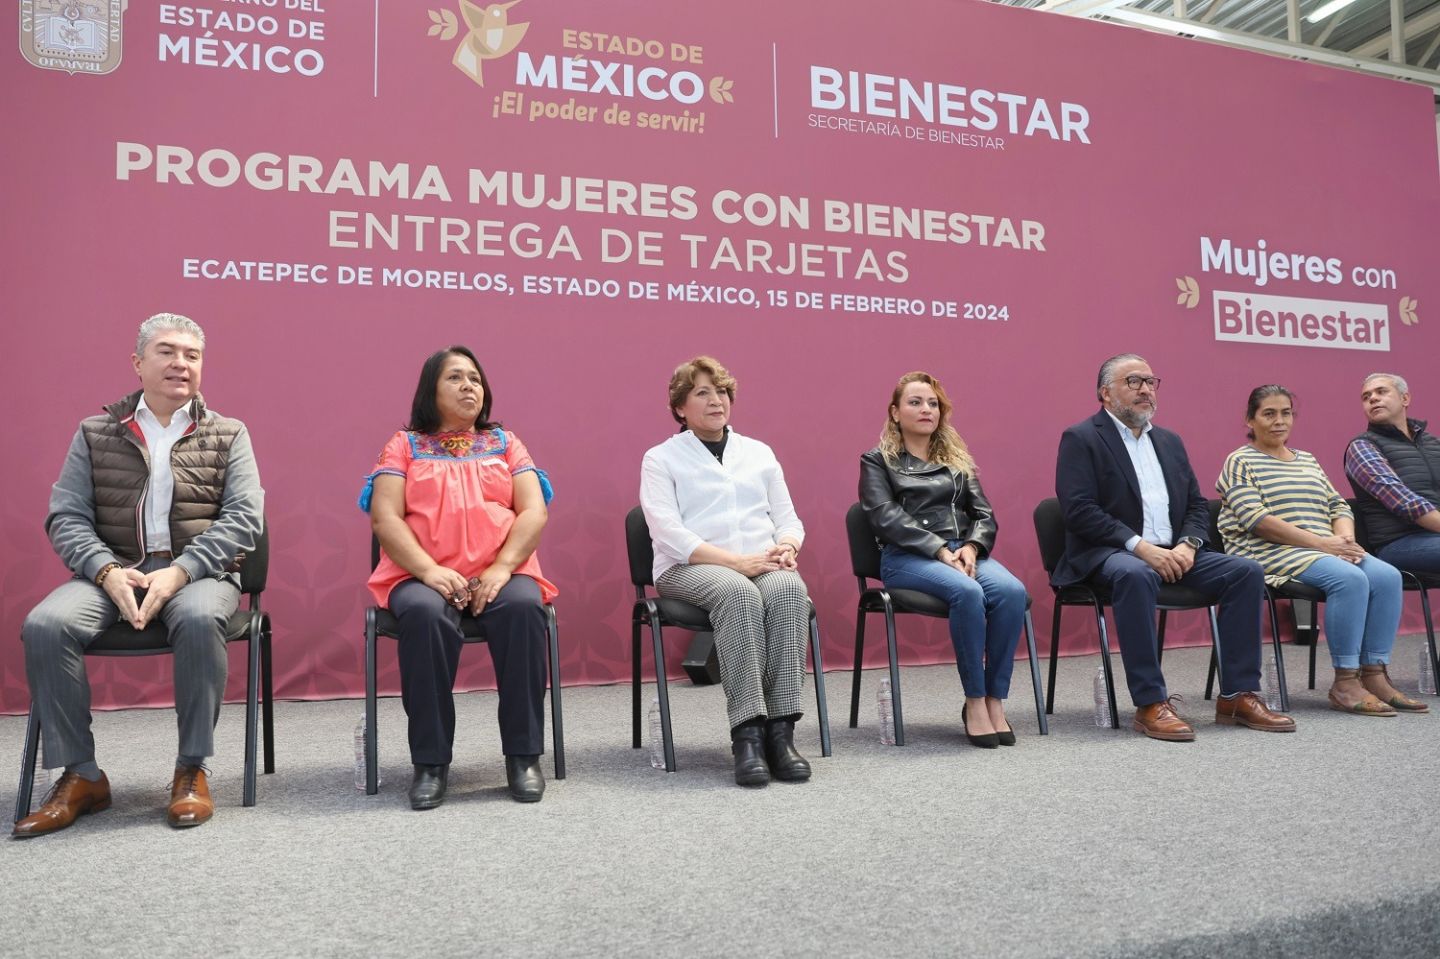 ’Mujeres con Bienestar’ otorga apoyo económico y beneficios adicionales a 650 mil mexiquenses, es una tarjeta generosa: Gobernadora Delfina Gómez
